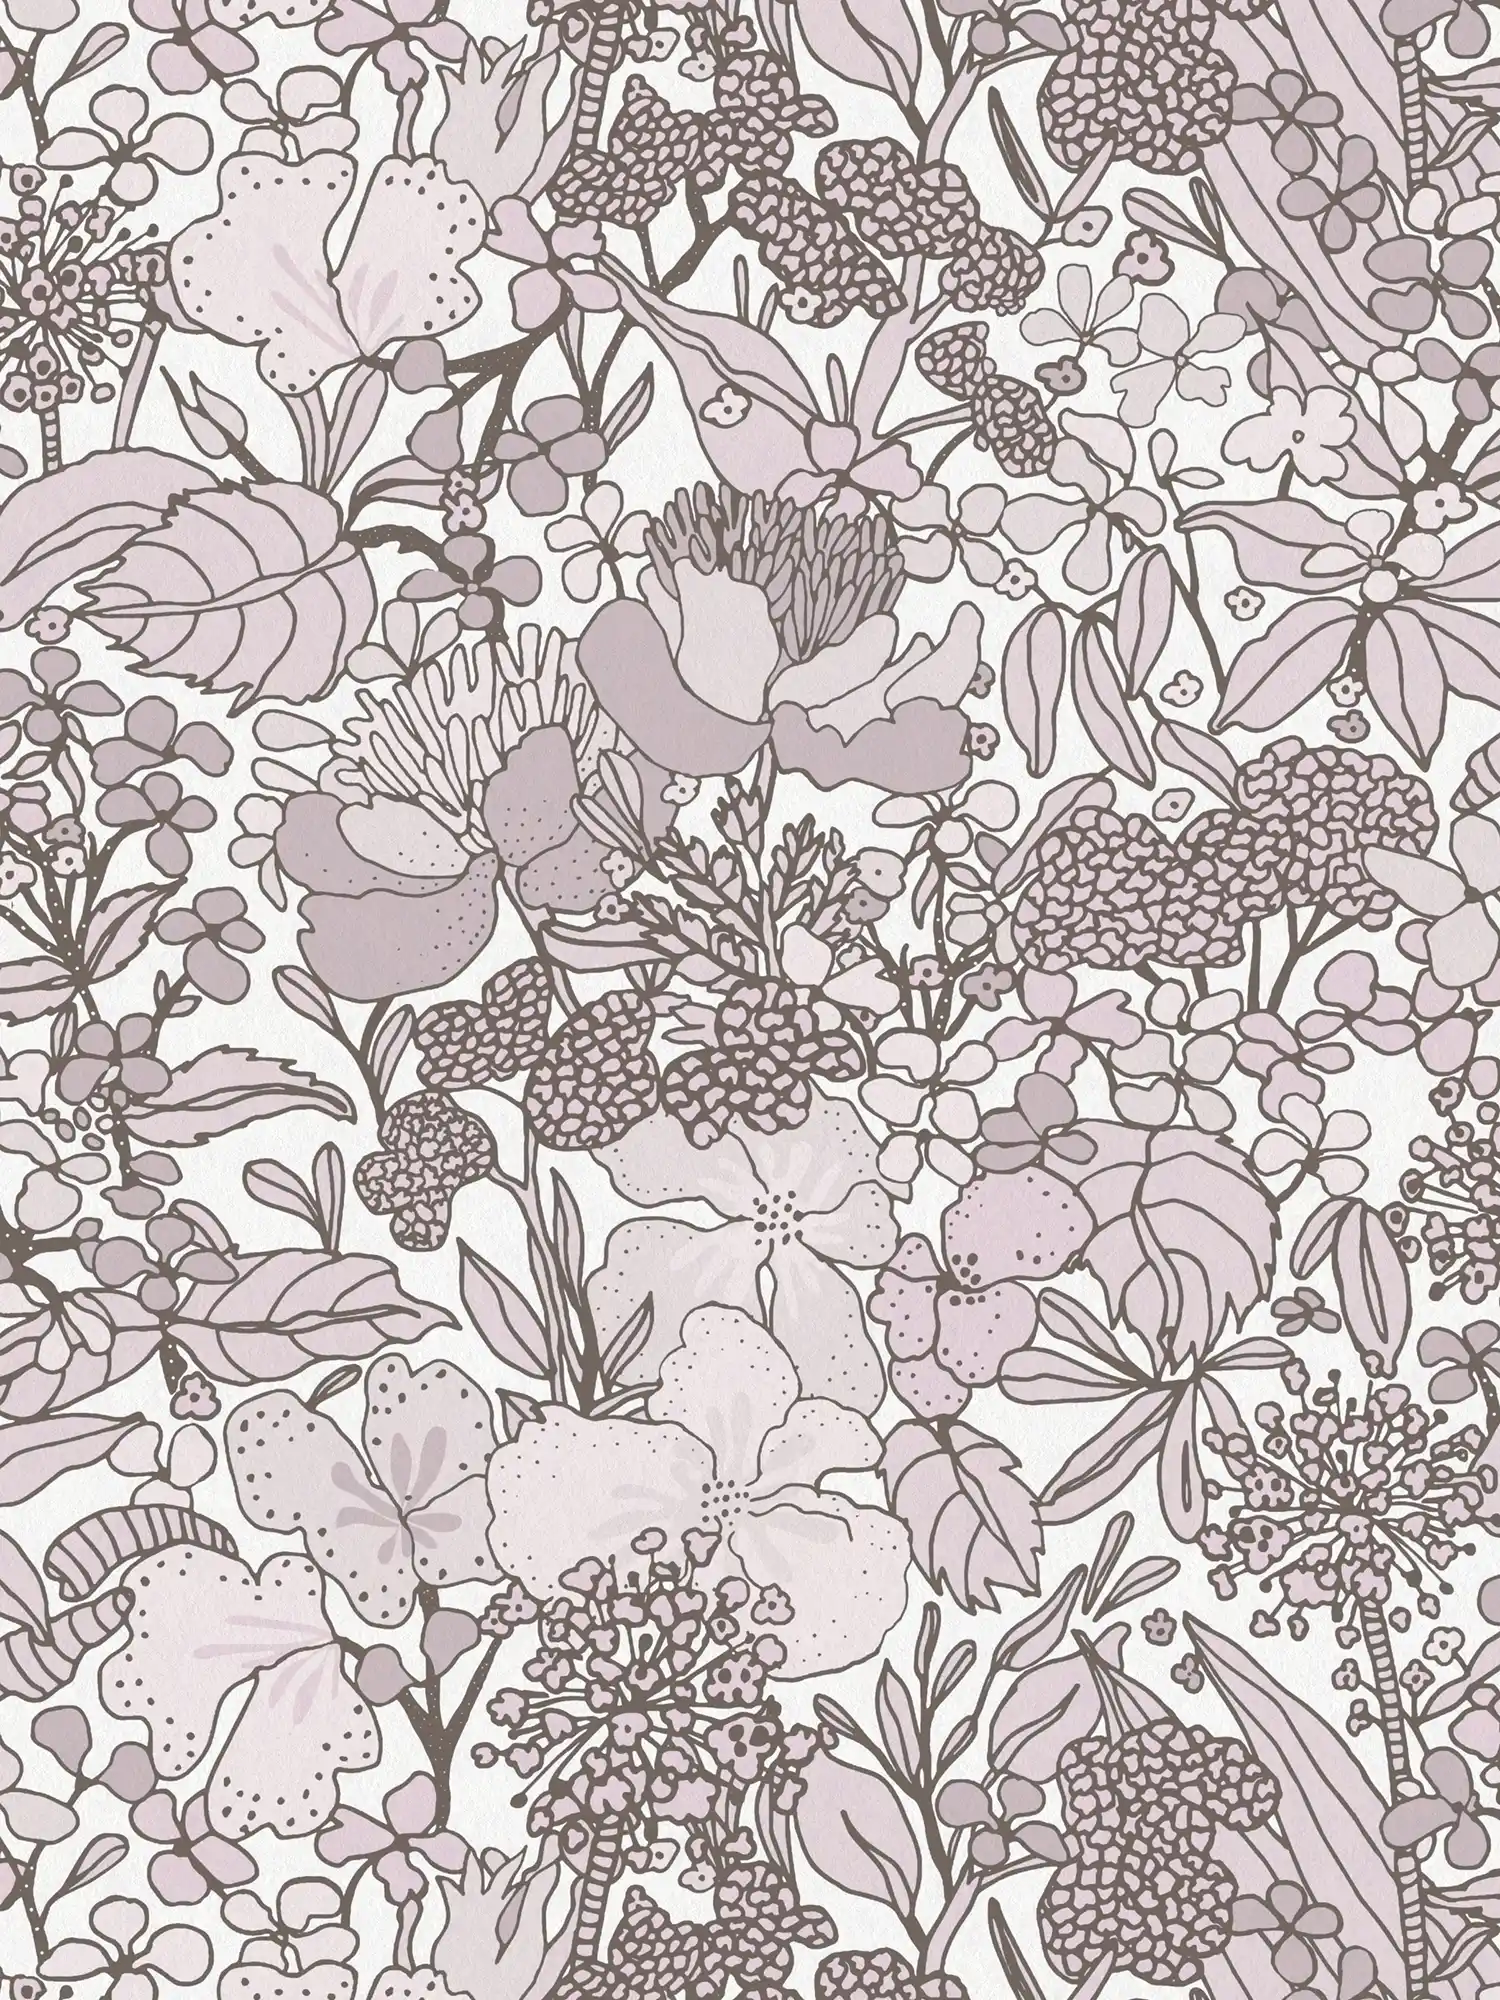         Papel pintado gris-beige con motivos florales en estilo de dibujo - crema, marrón, blanco
    